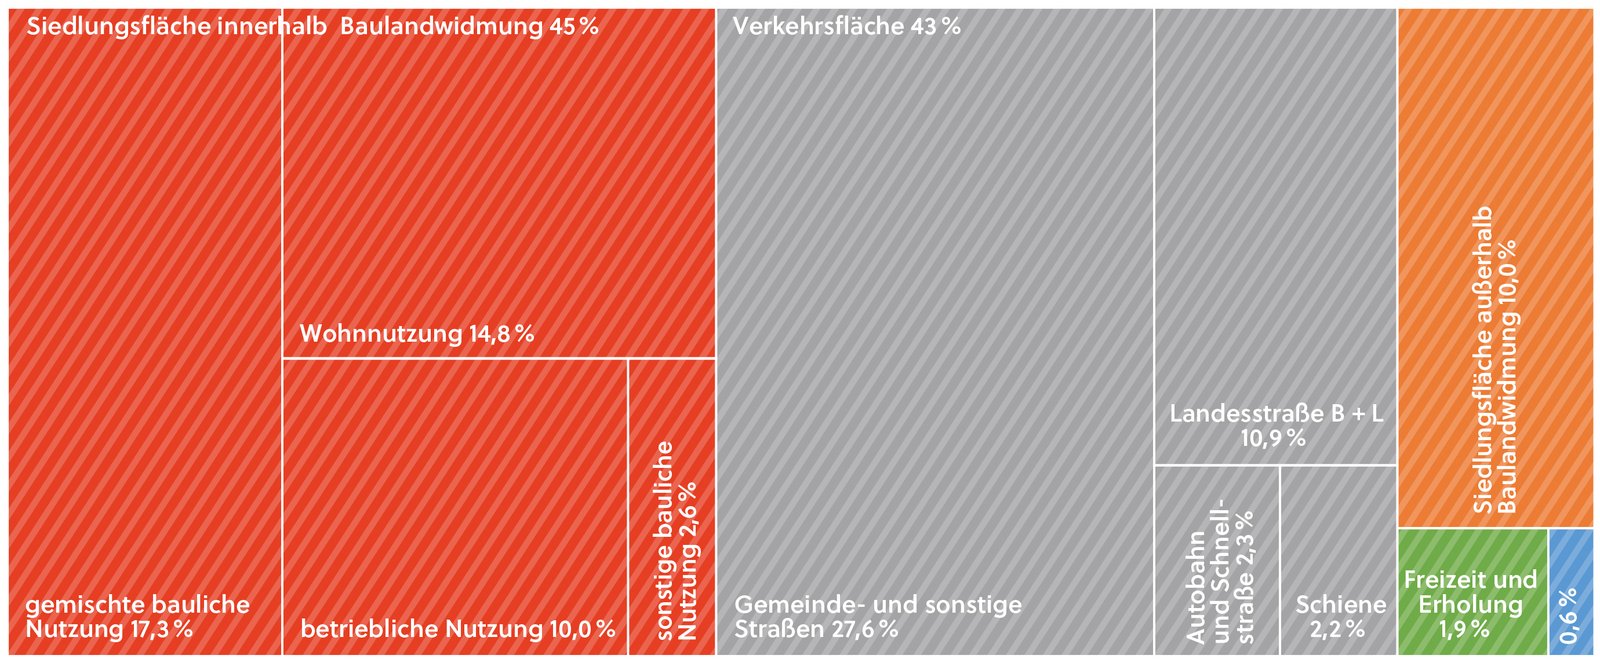 Abbildung zur Versiegelung in Österreich in Kategorien (Anteile in %)